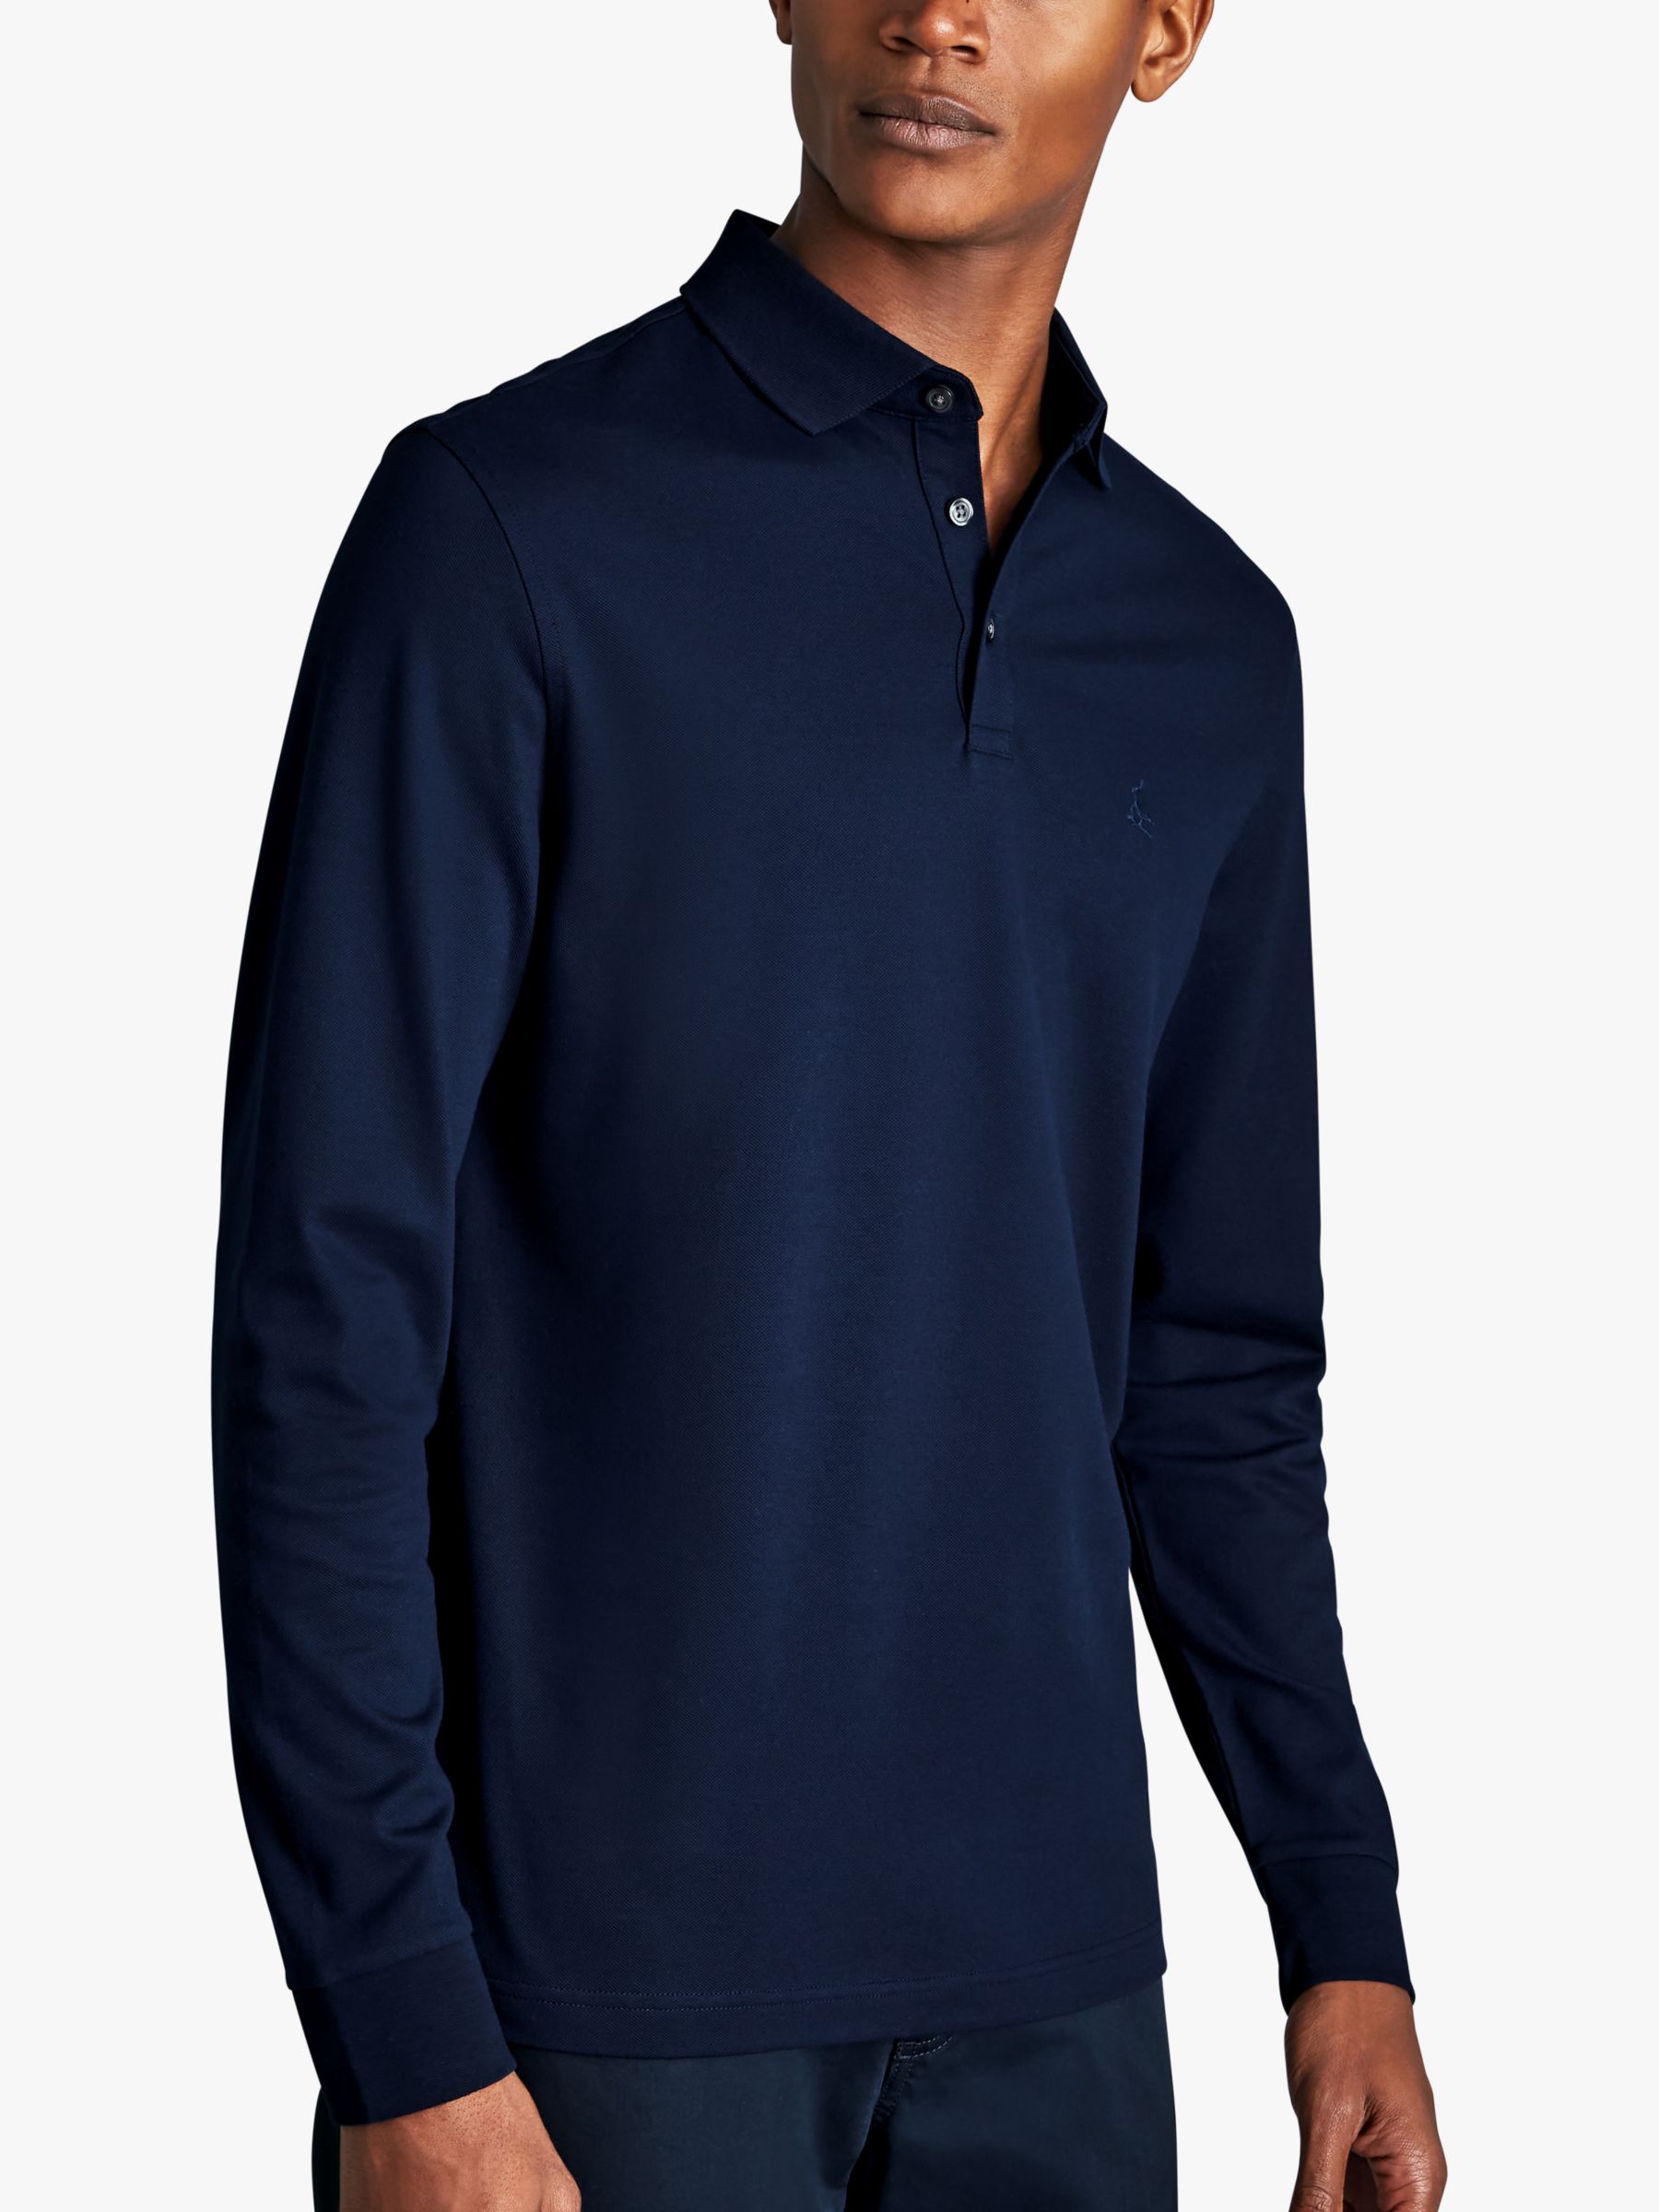 long-sleeved polo shirt